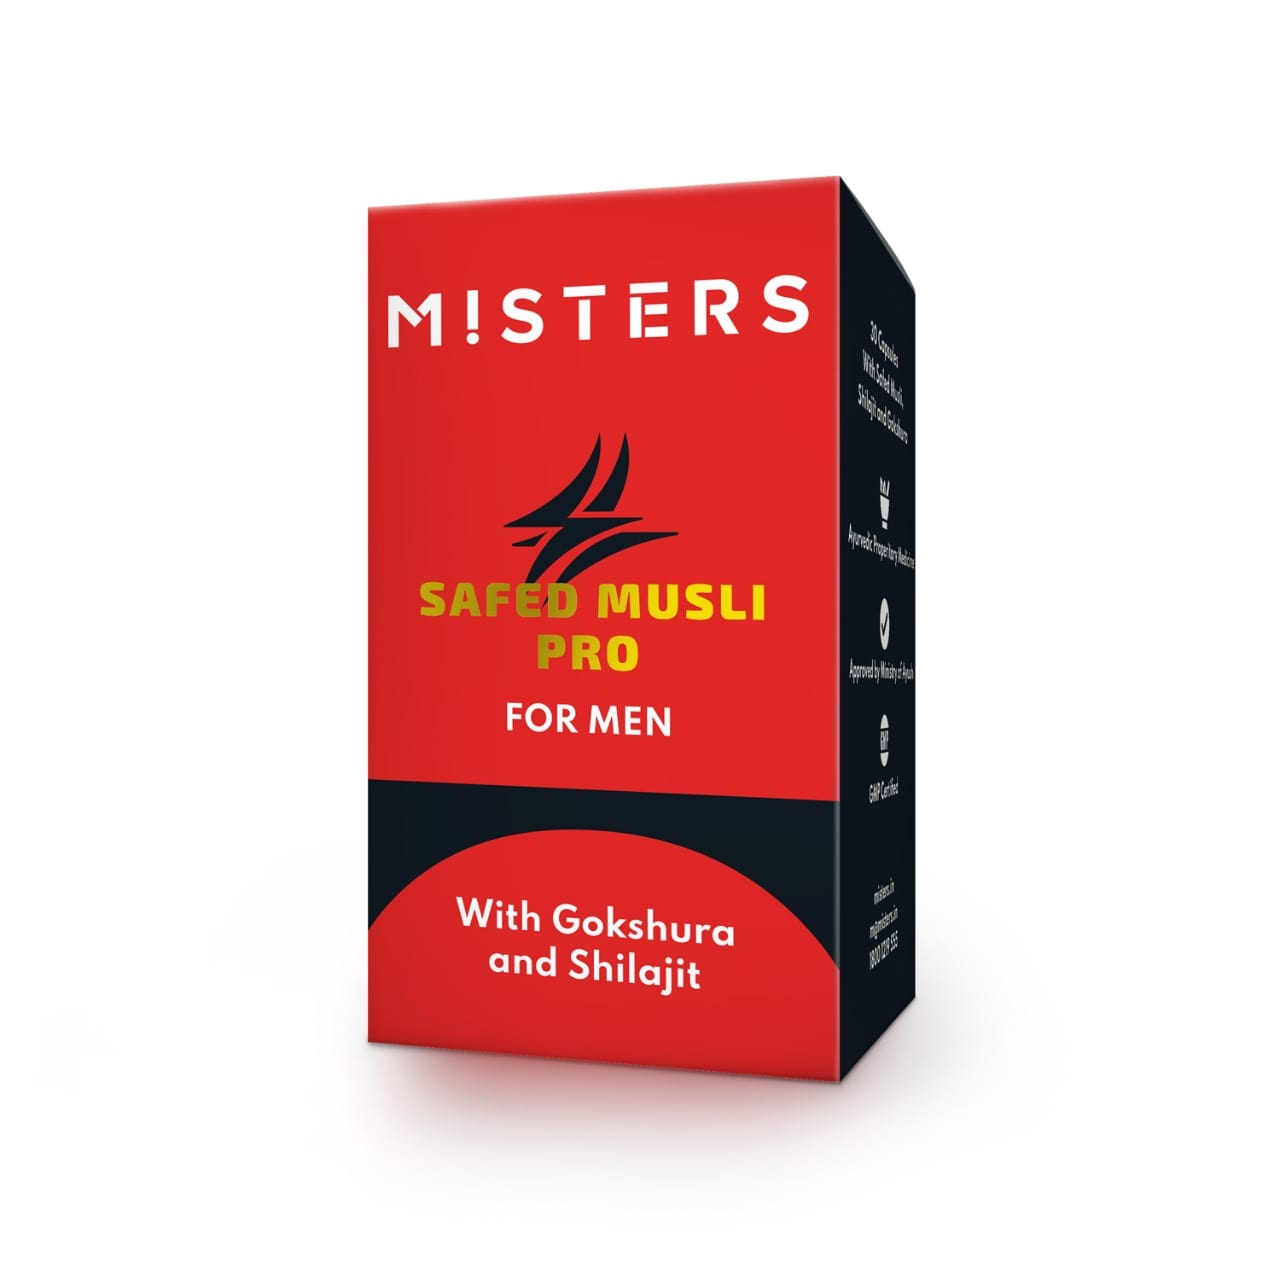 Misters Misters Safed Musli Pro for Men